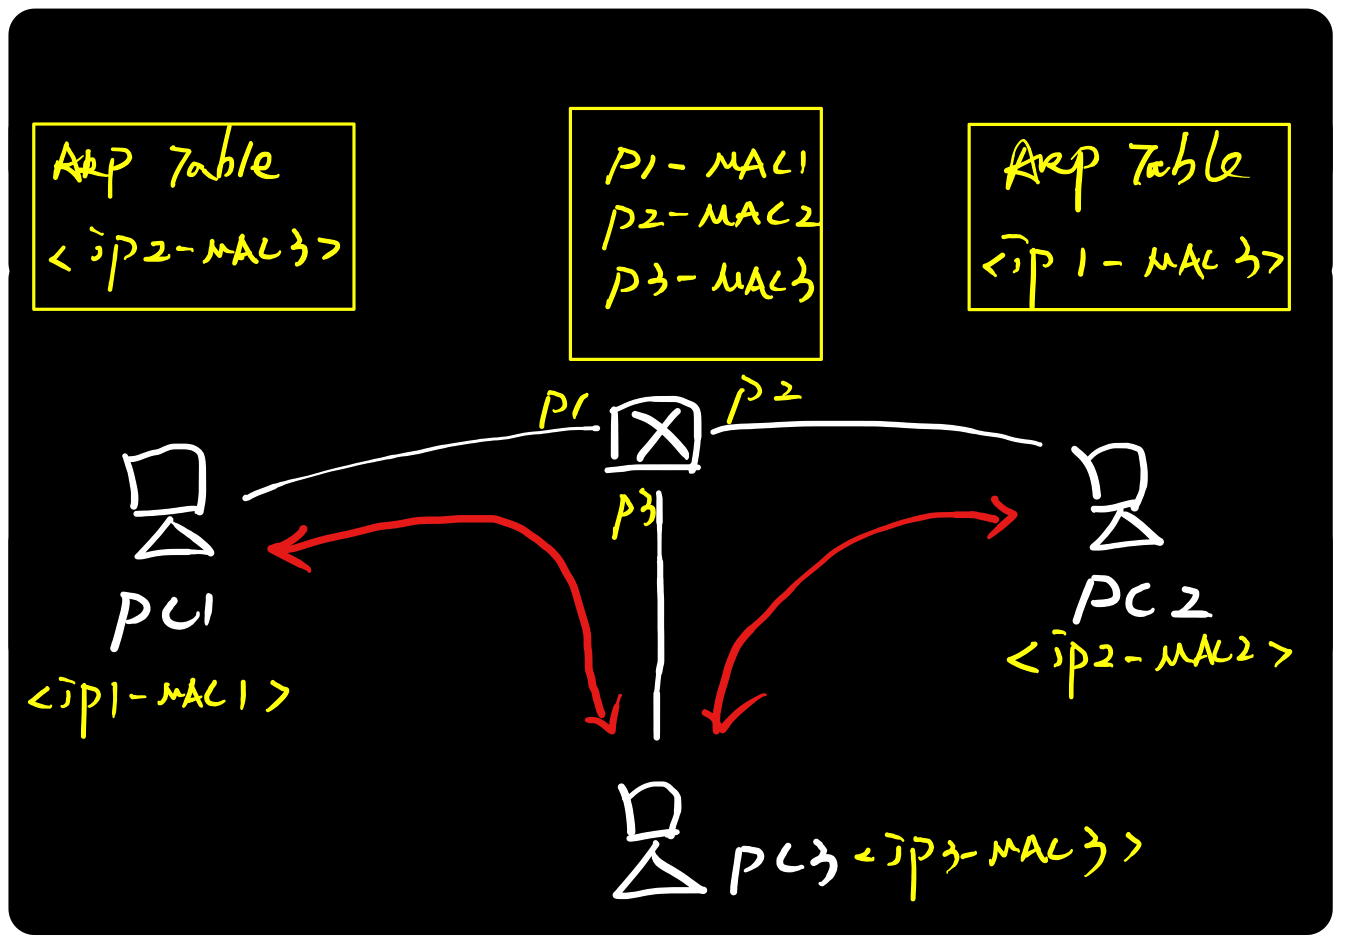 图解ARP协议（二）ARP攻击原理与实践_ARP协议_07